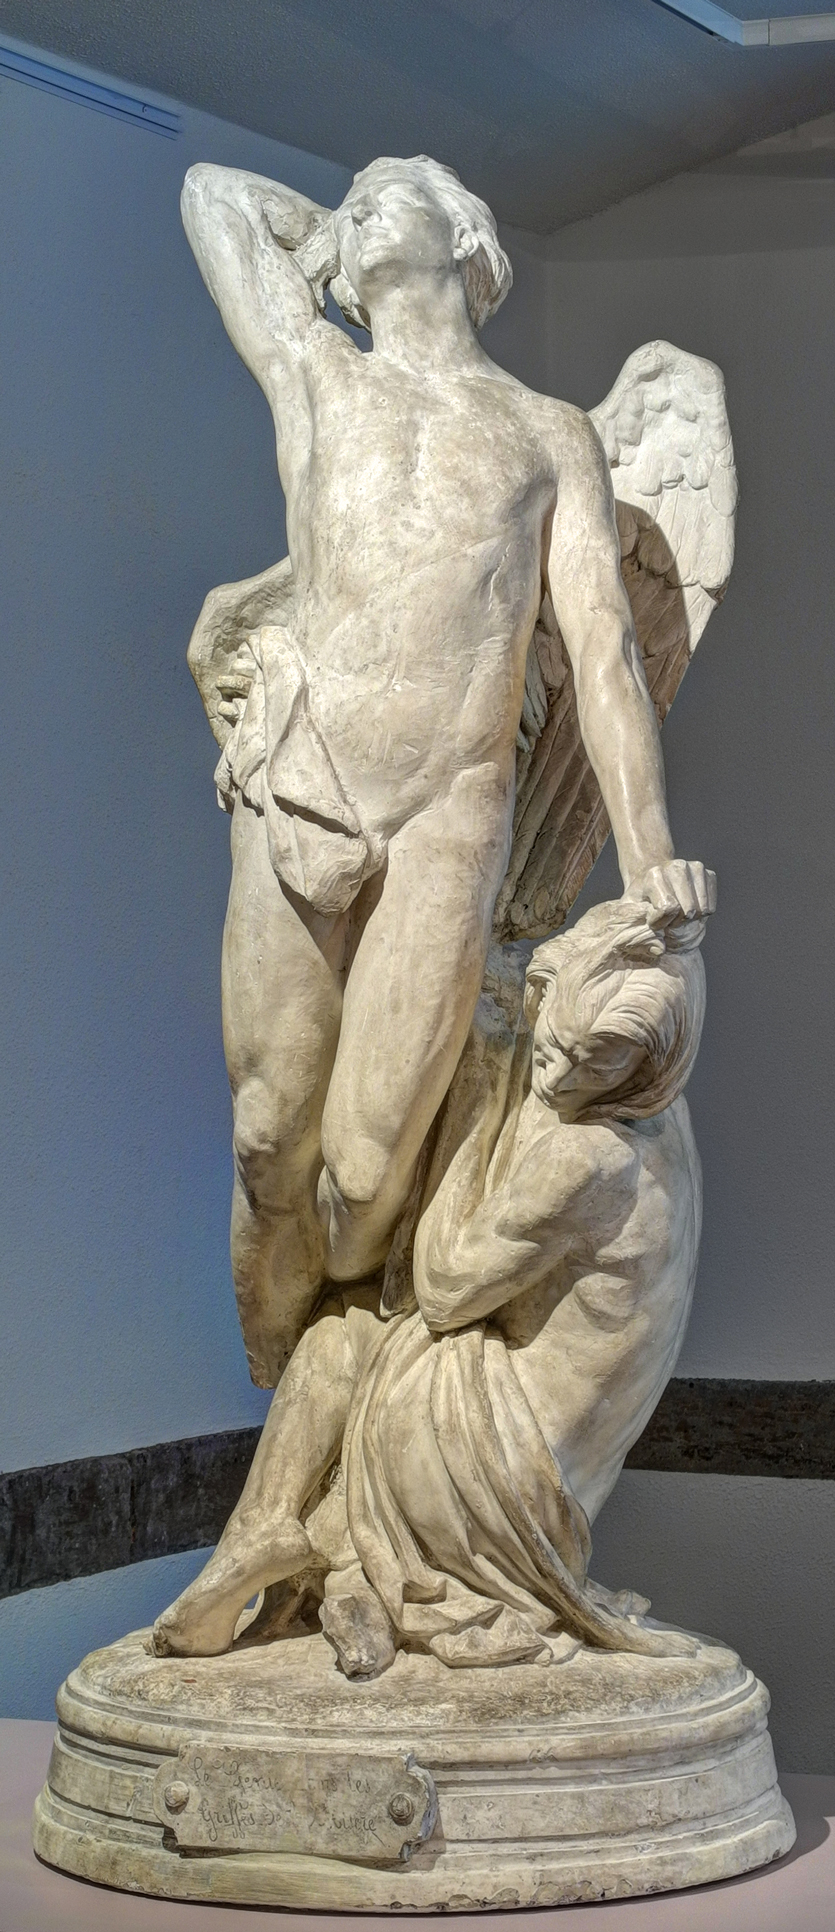 Le génie dans les griffes de la misère, Frédéric-Auguste Bartholdi. 1859, plâtre